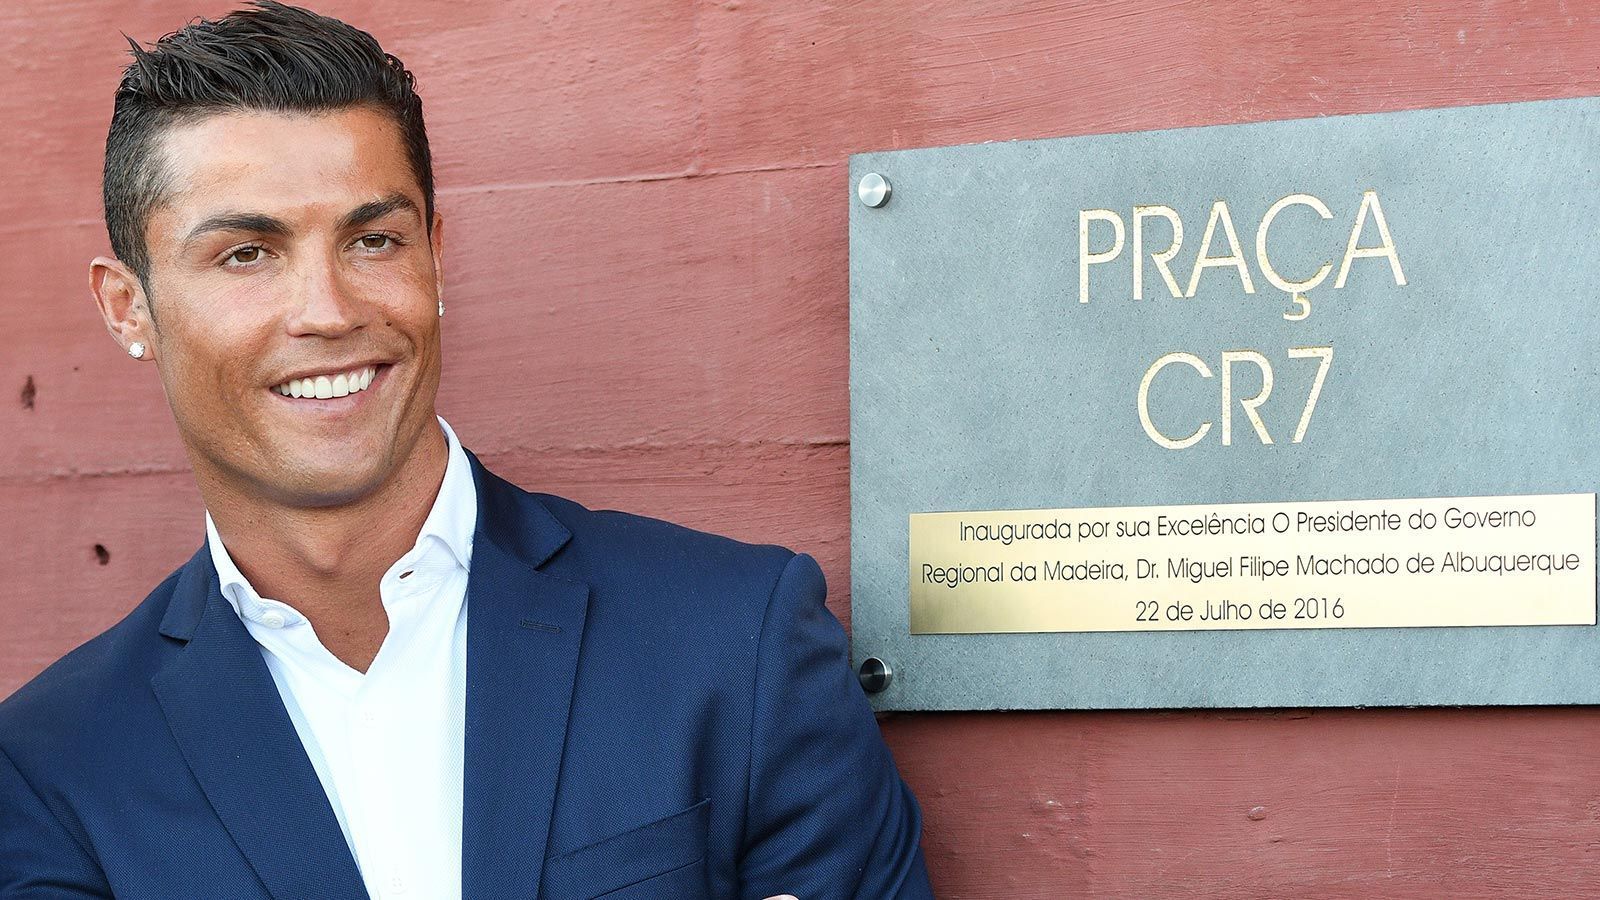 
                <strong>Hotelier</strong><br>
                Ronaldos nächster Nebenberuf: Hotelier. Natürlich beschreitet der extravagante Kicker auch hierbei außergewöhnliche Wege ...
              